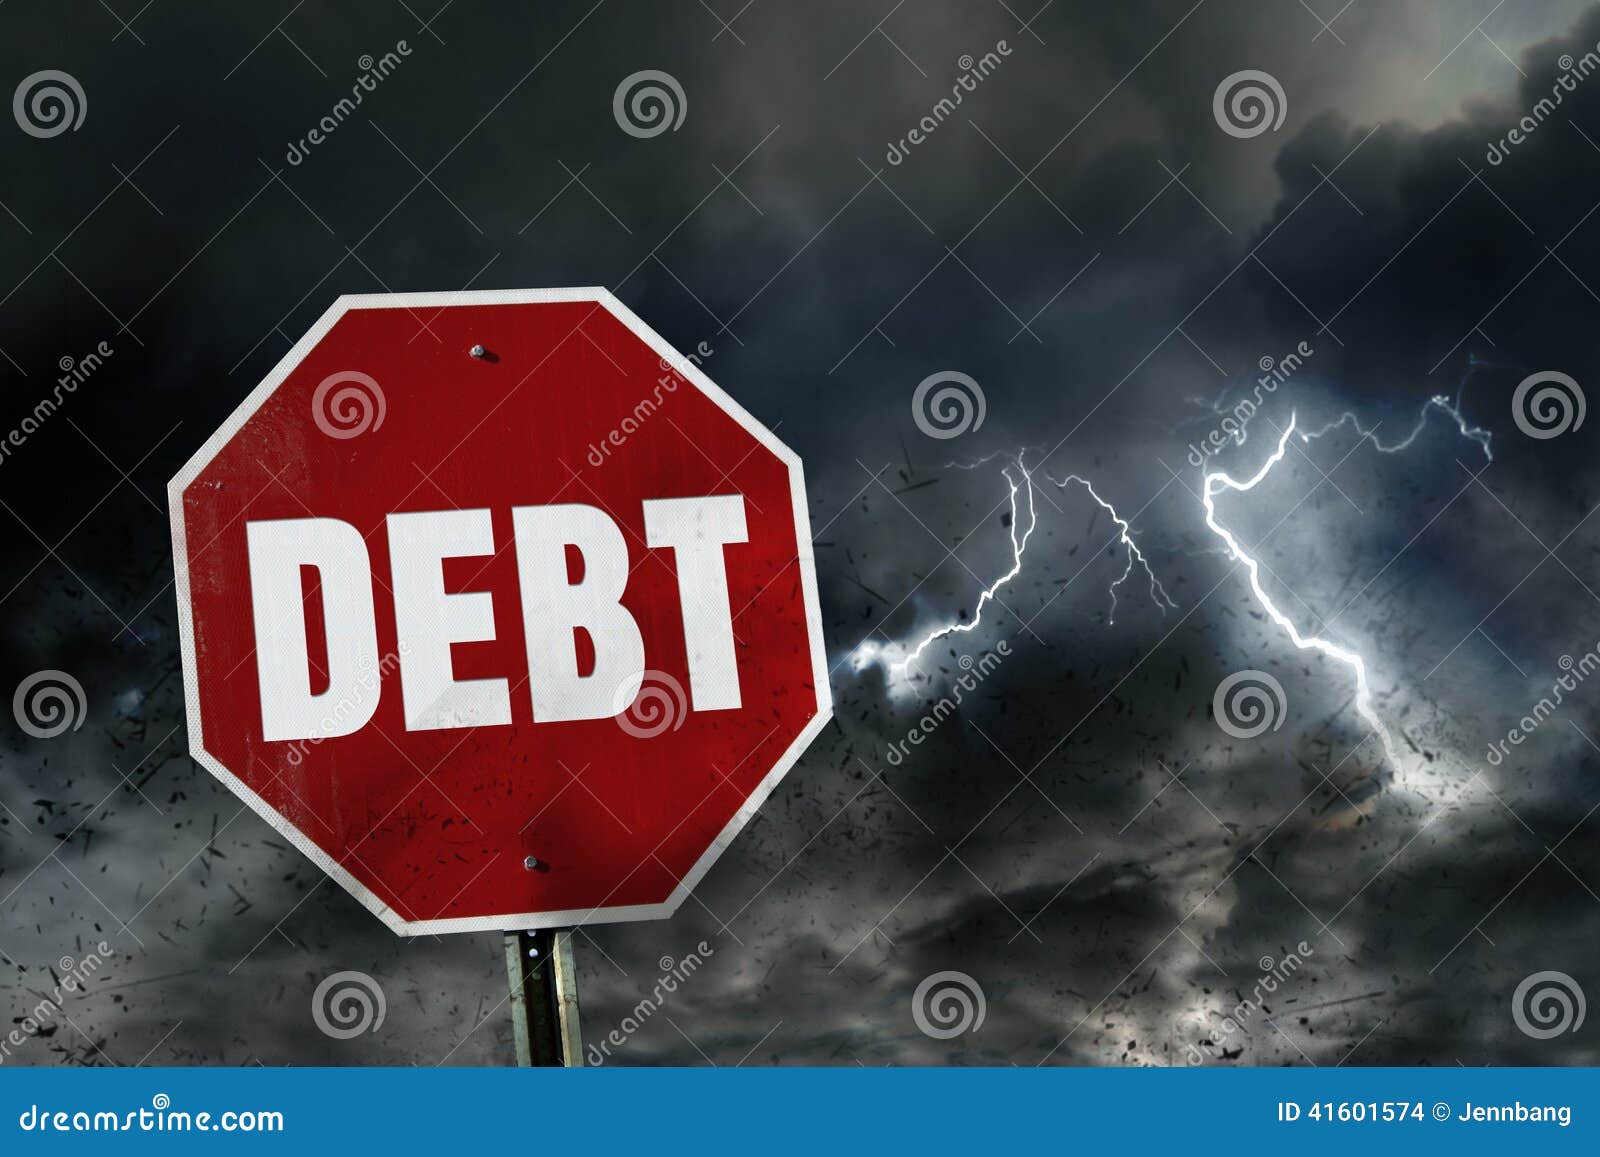 risk of debt